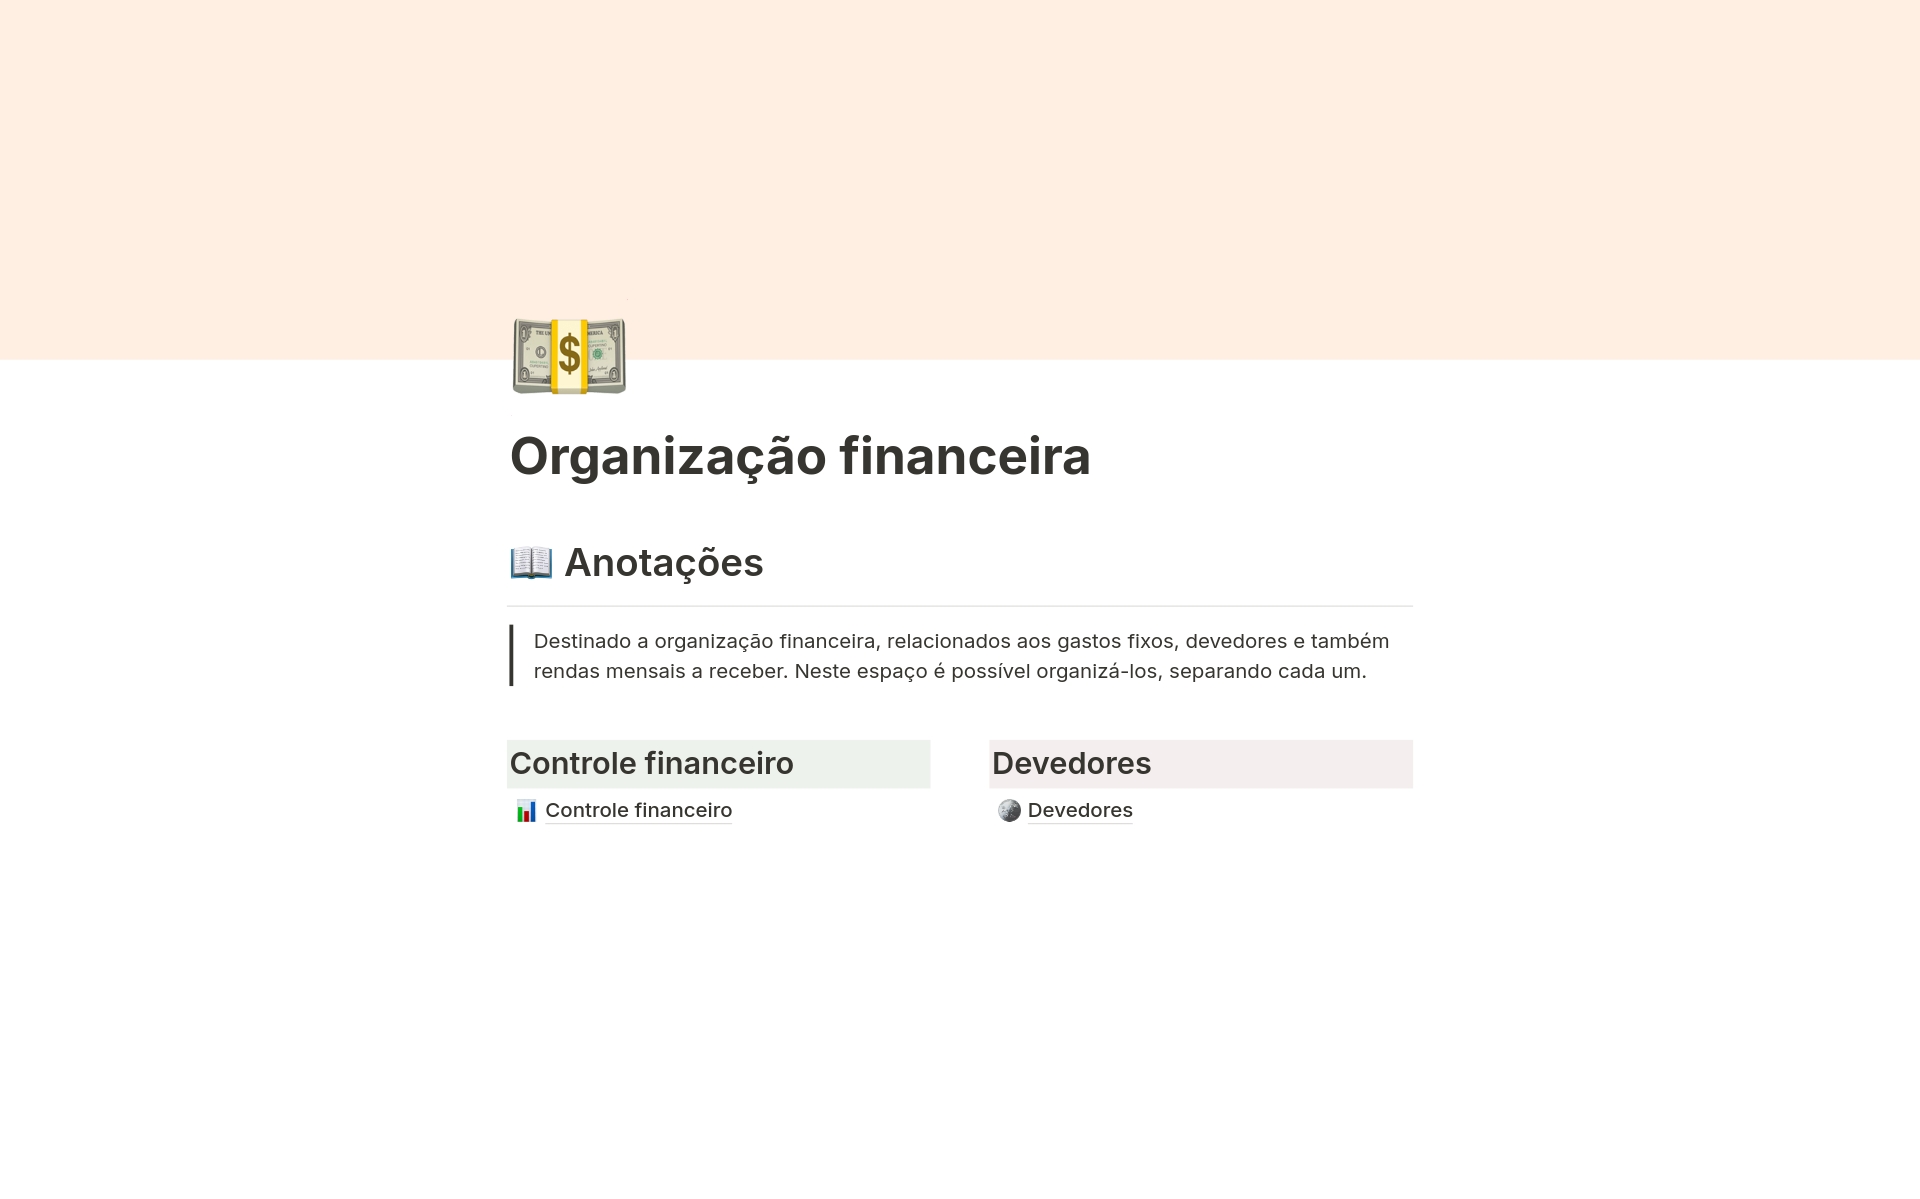 Vista previa de una plantilla para Organização financeira